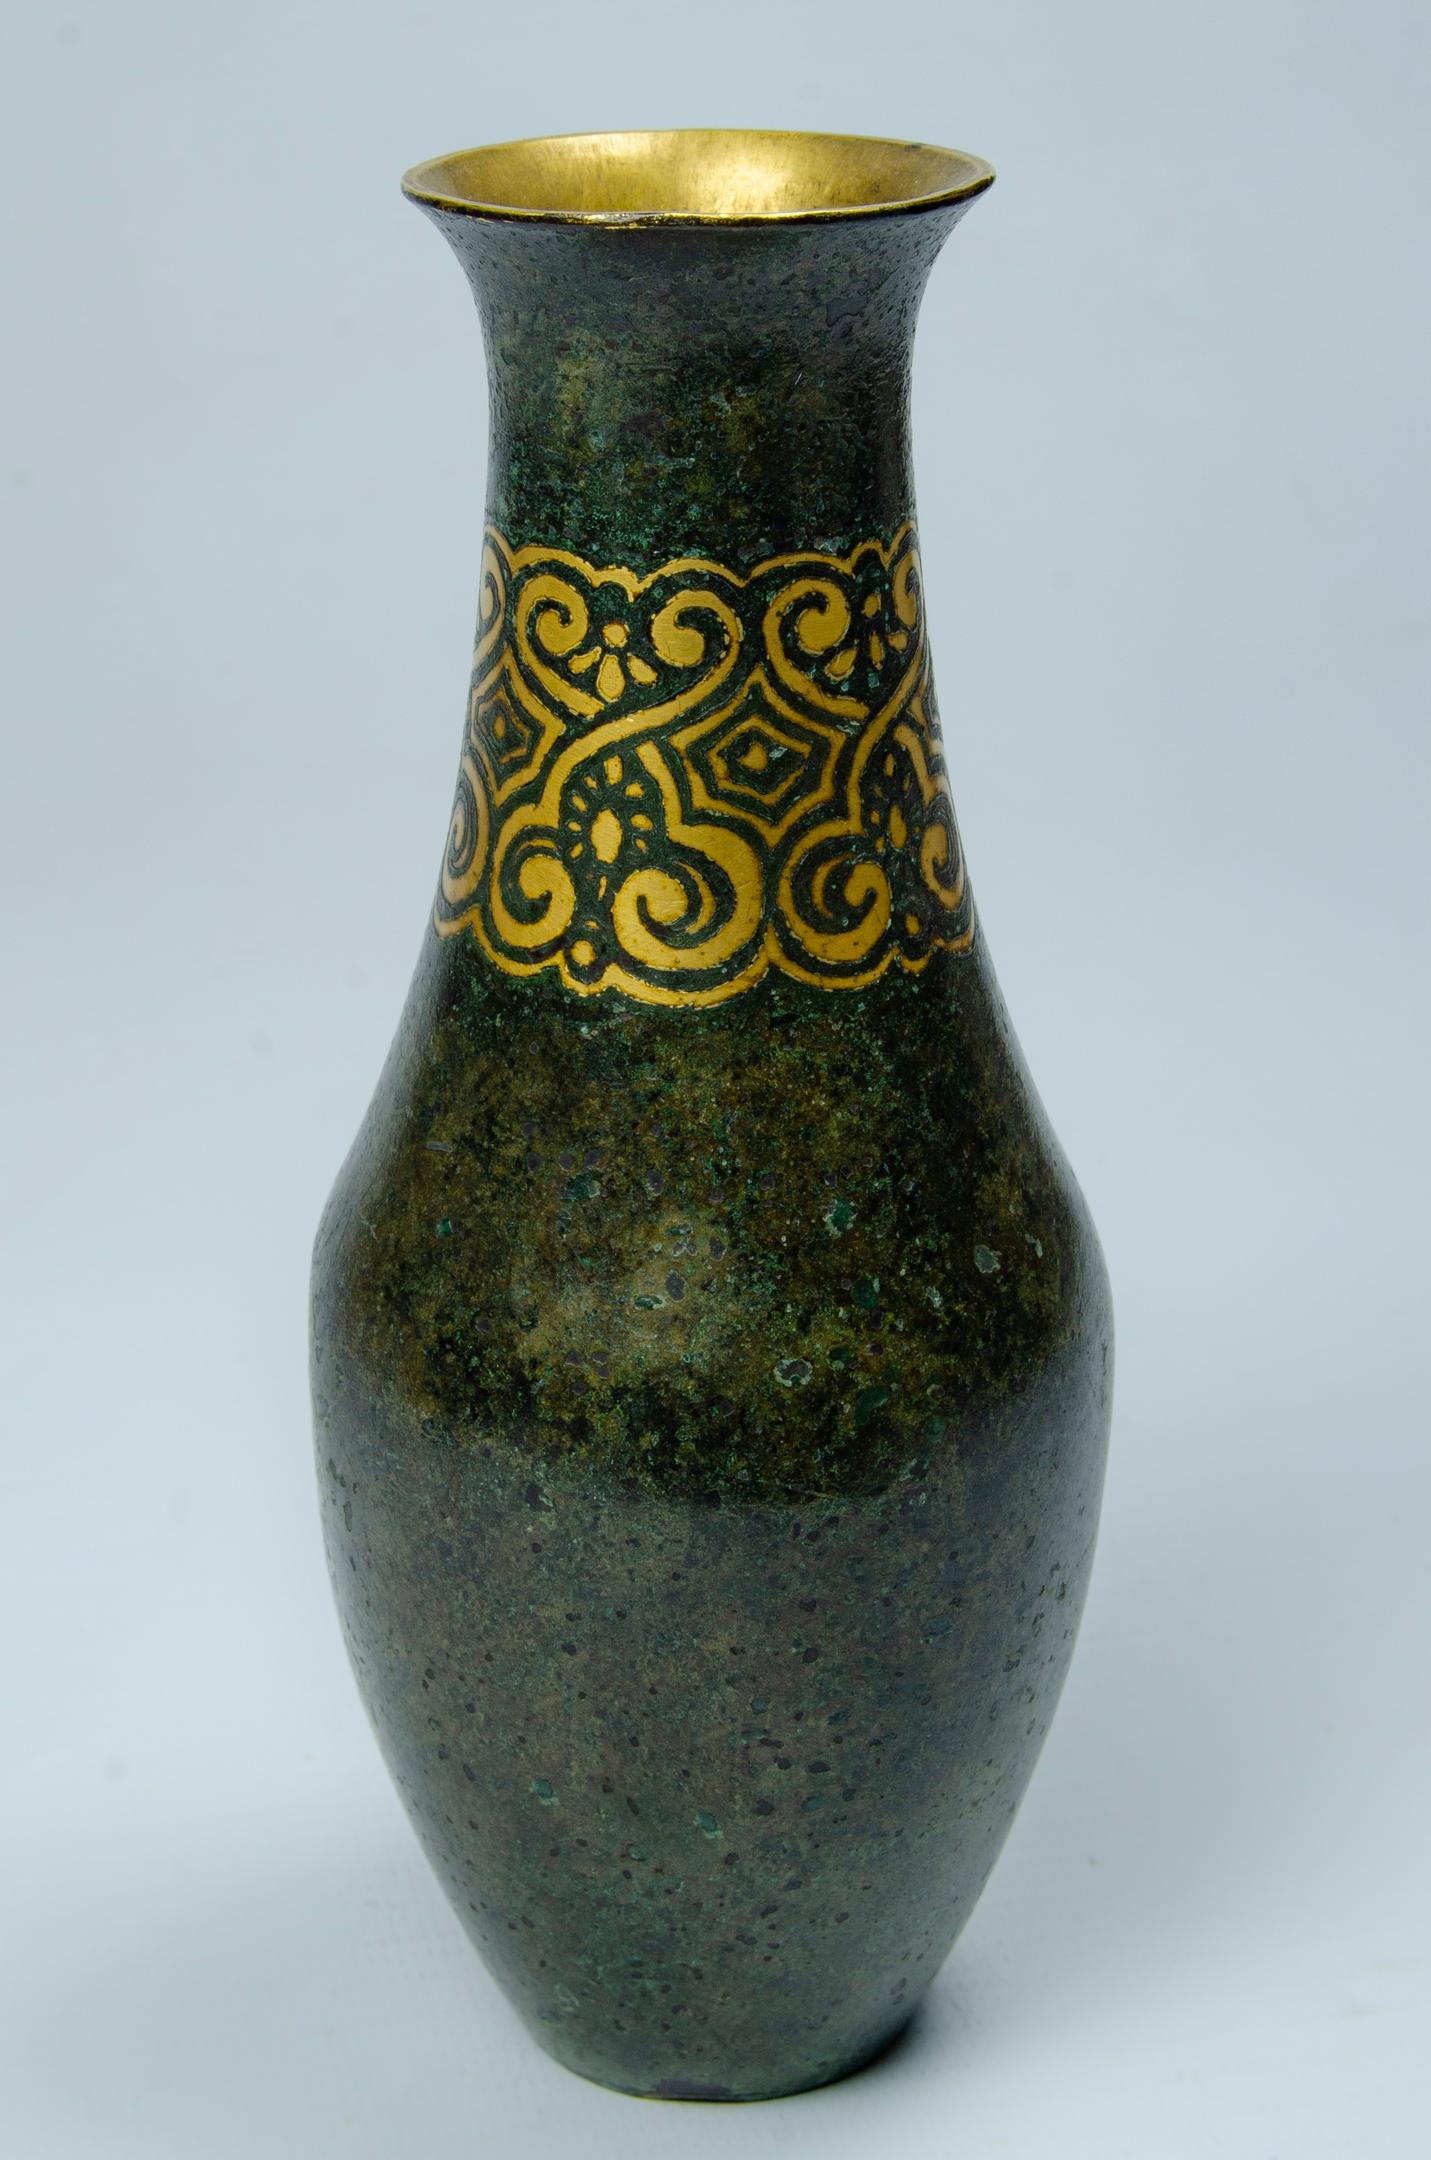 Christofle Dinanderie Vase klein
Art-Déco-Design um 1930
Bronze in Dinanderie Herkunft Frankreich
kleine Beulen und einige Abnutzungserscheinungen an der Kufe.